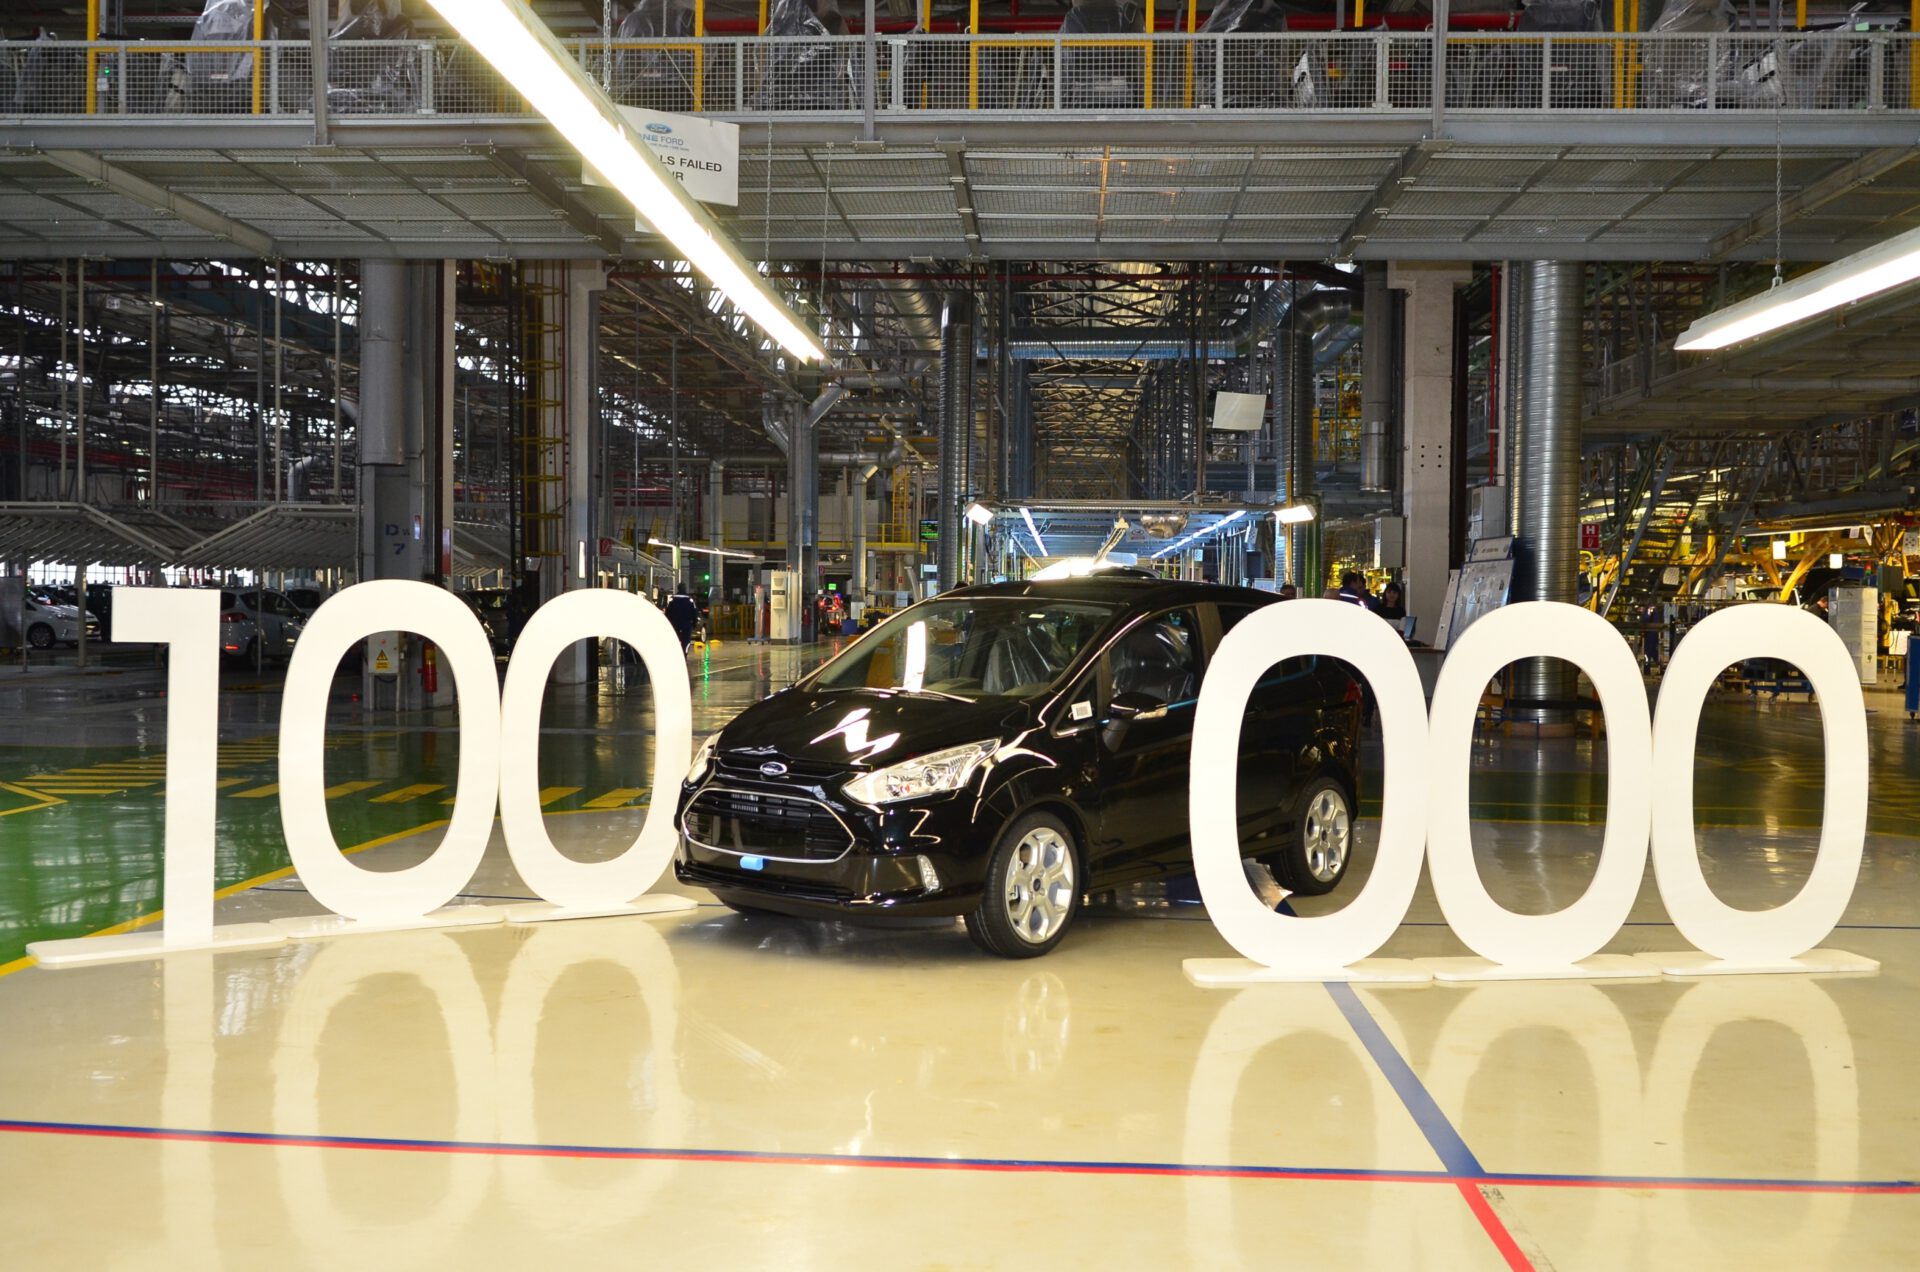 Masina Ford cu numarul 100.000 produsa la Craiova